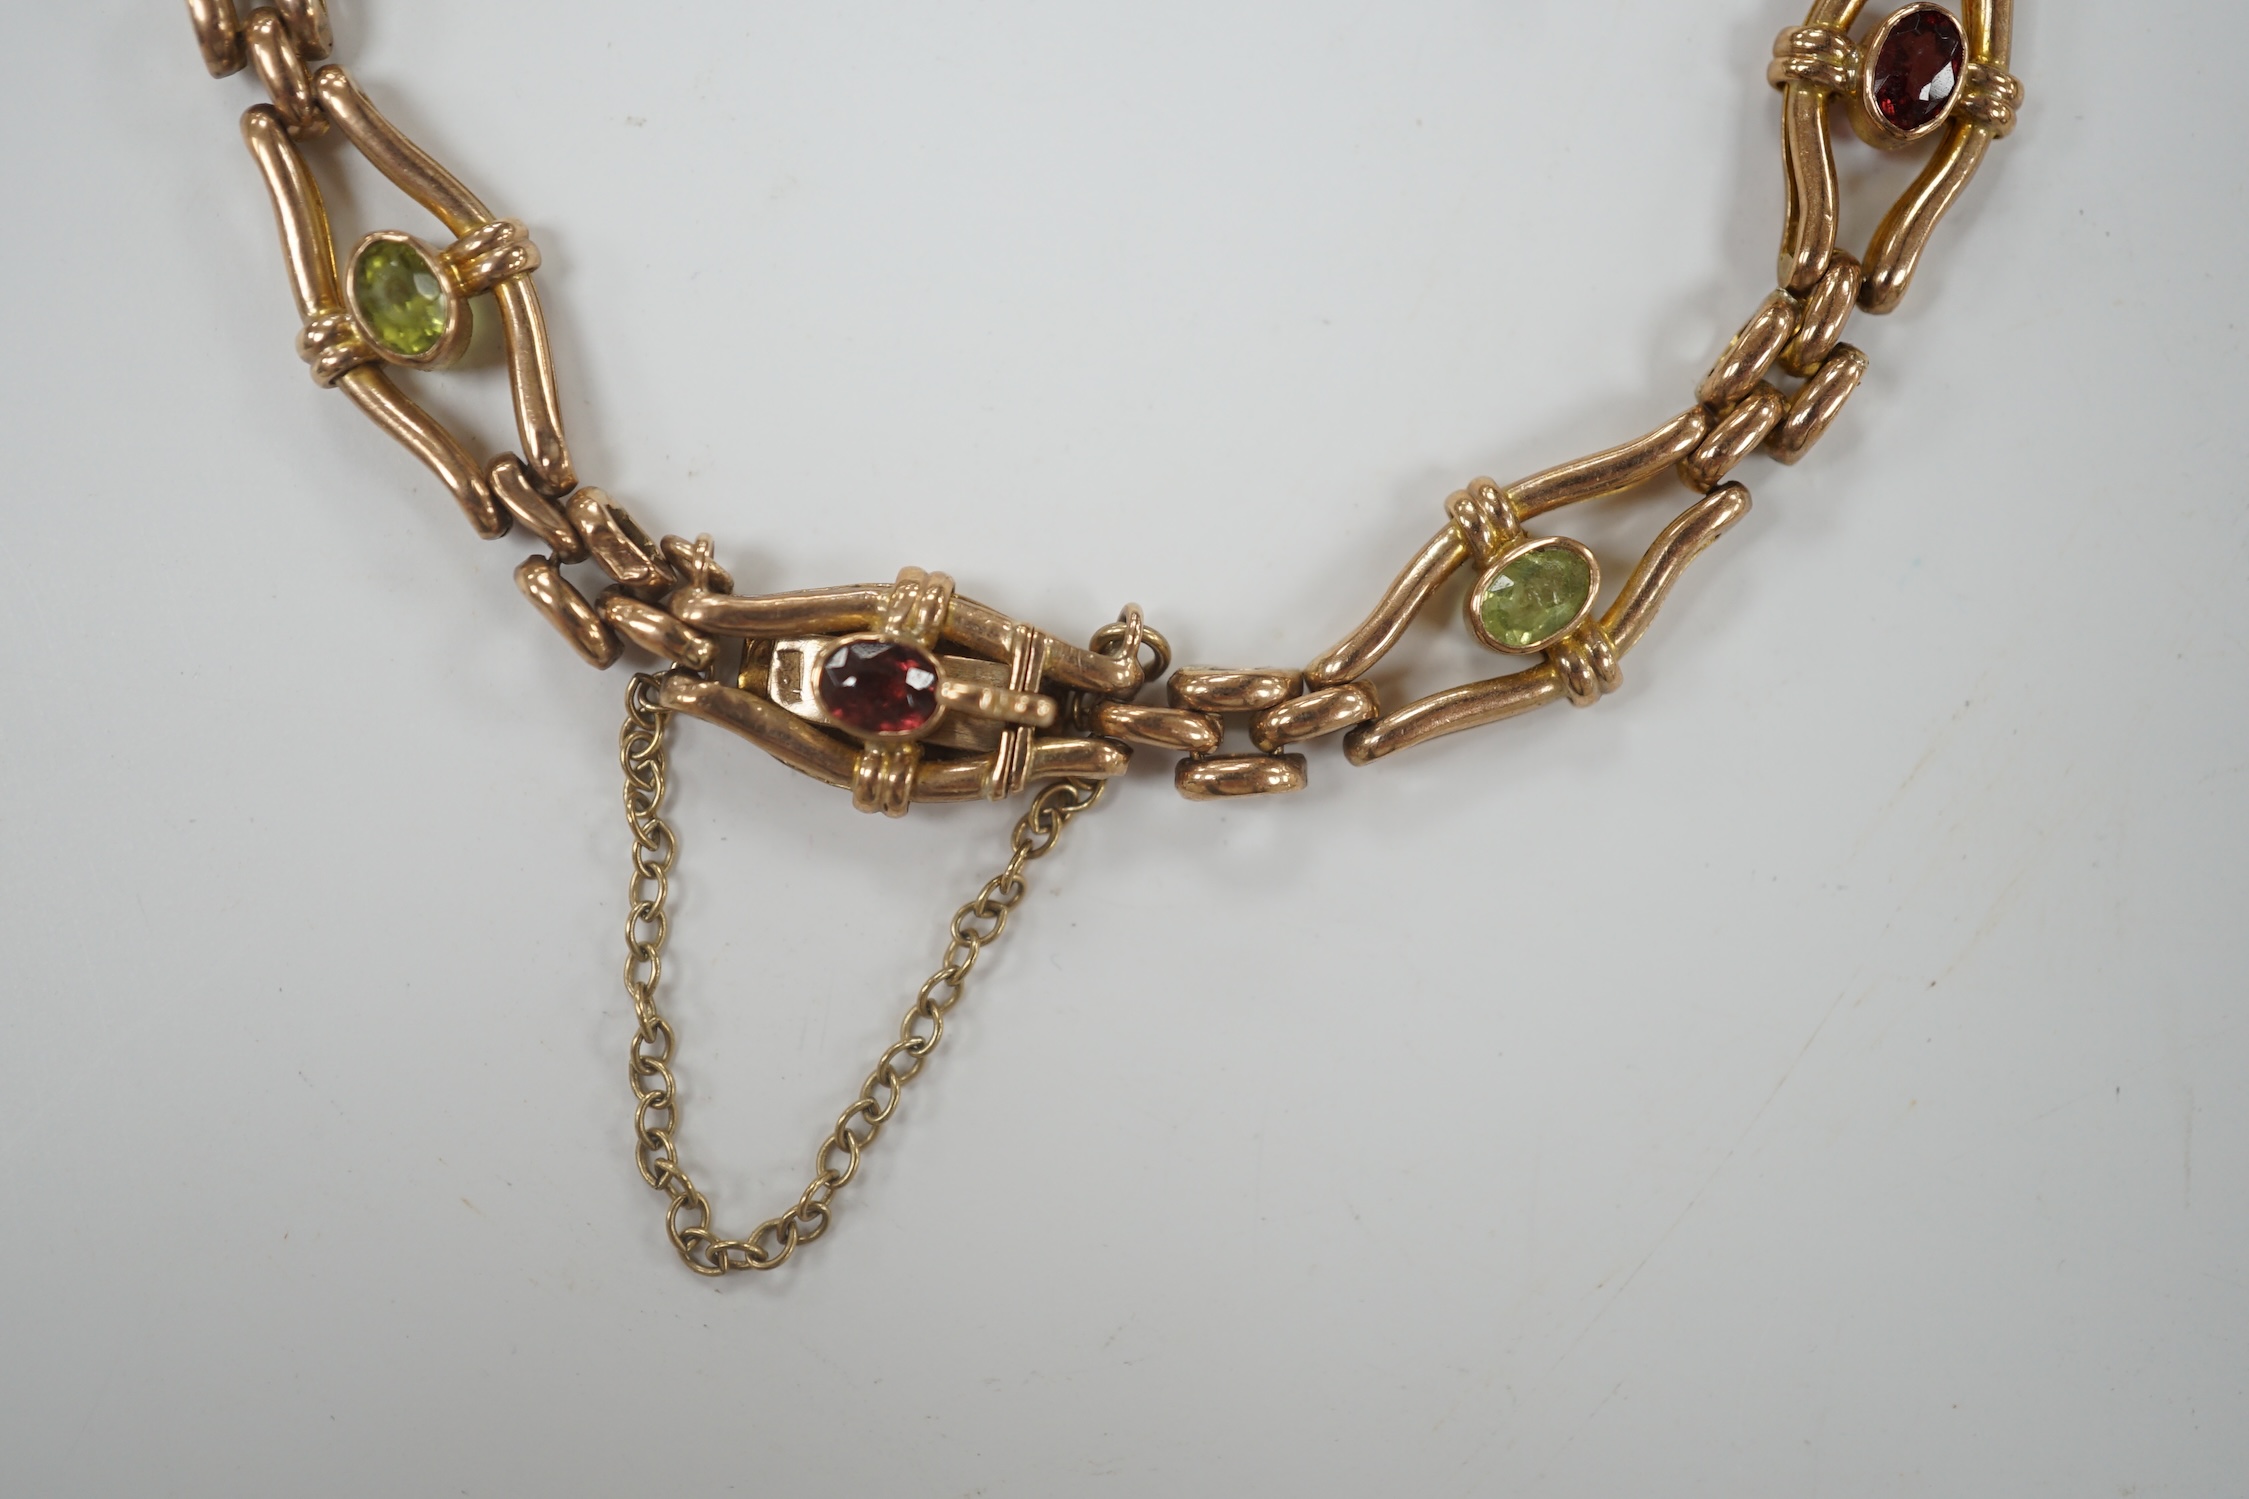 An Edwardian 9ct and gem set open link bracelet, 18cm, gross weight 9.3 grams.